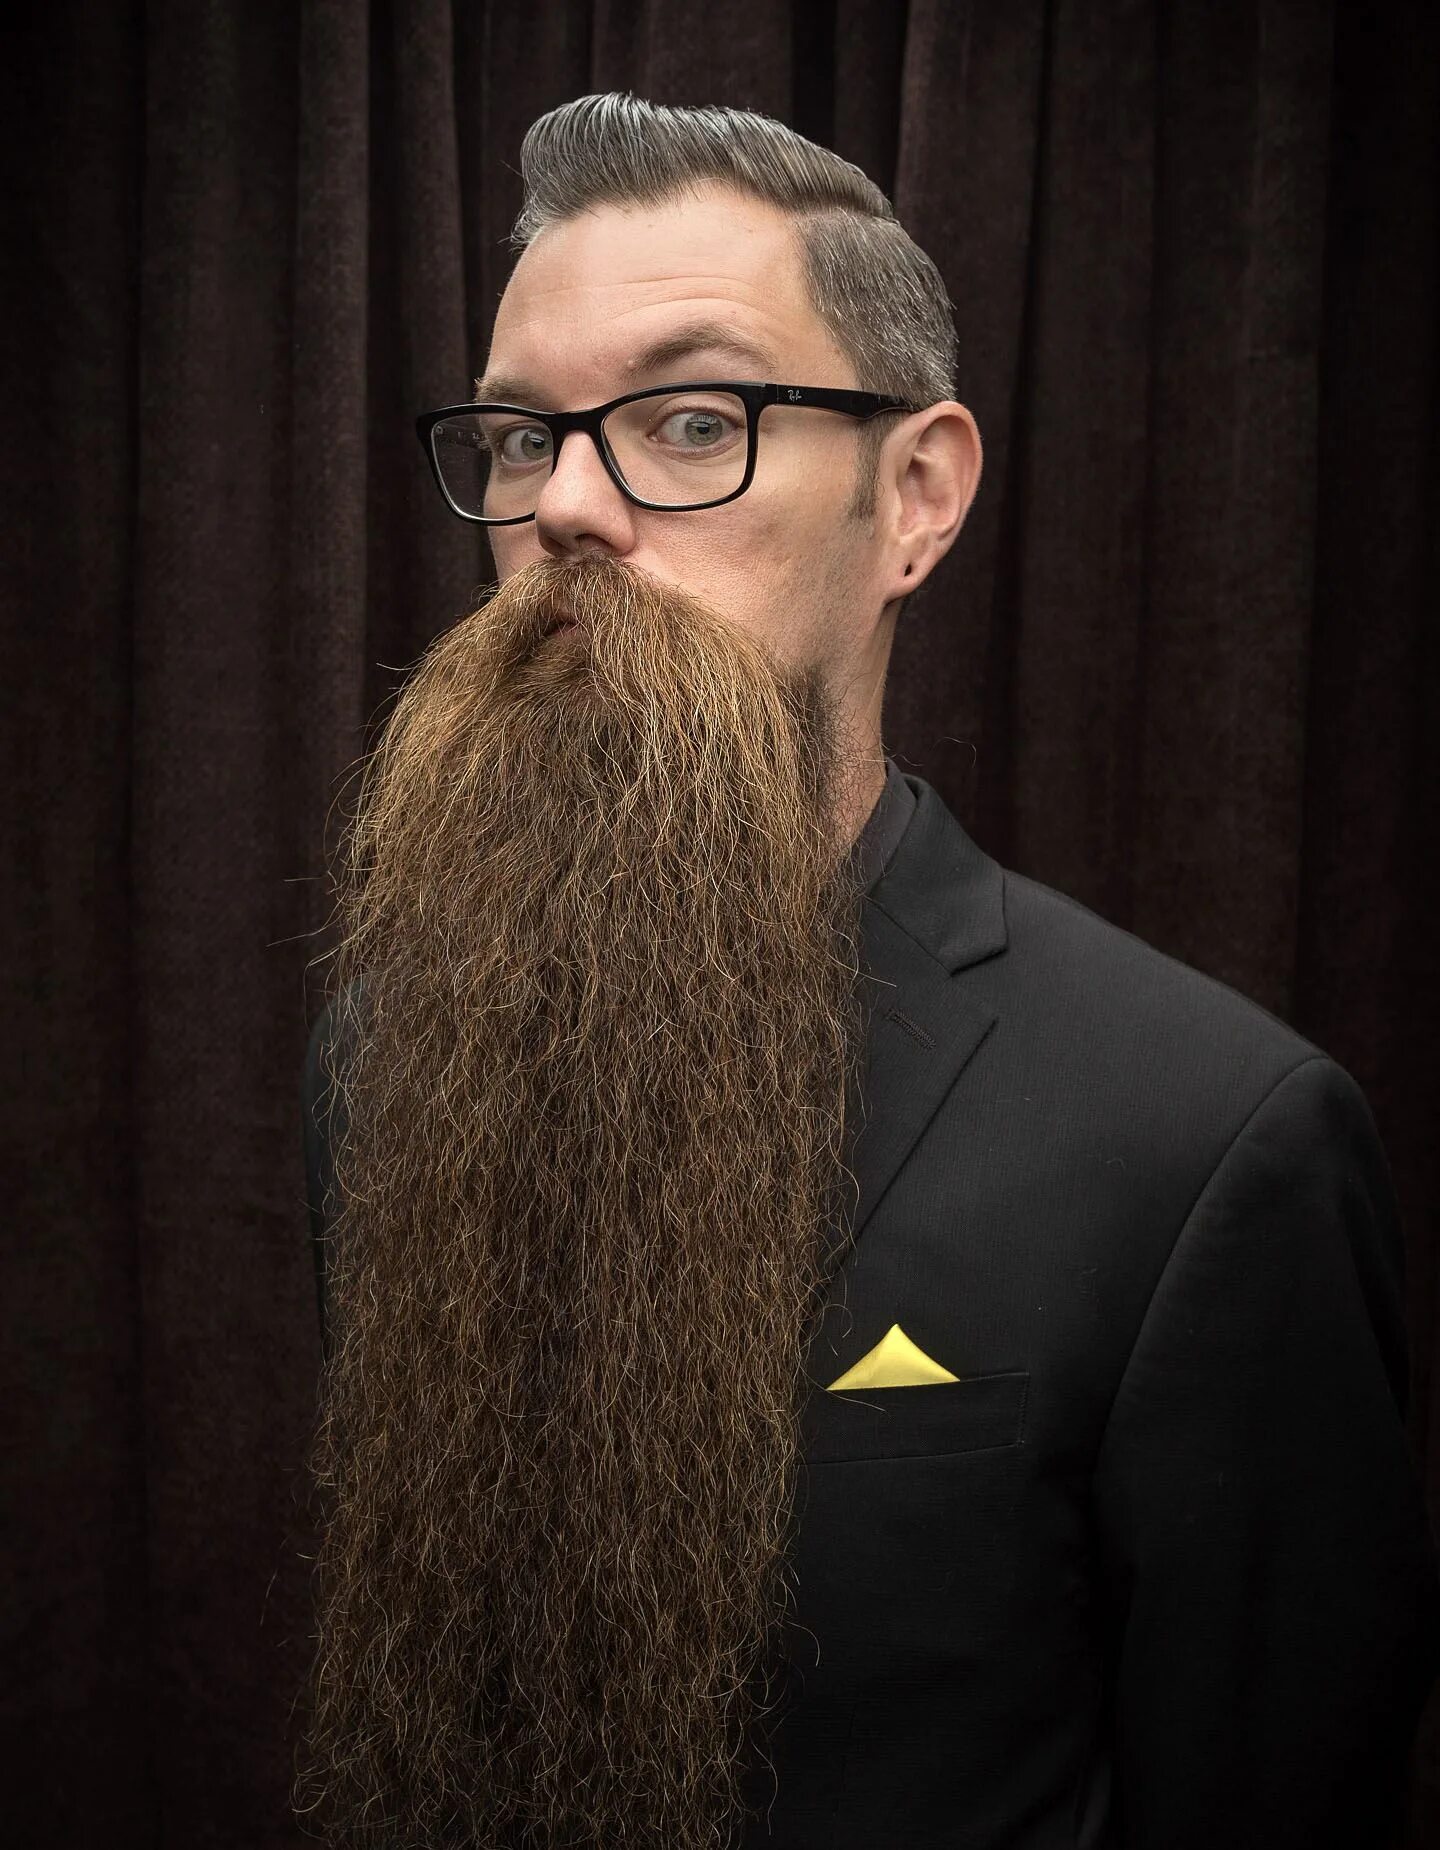 Козлиная (goatee). Борода козлиная бородка. Full goatee борода. Борода эспаньолка длинная.